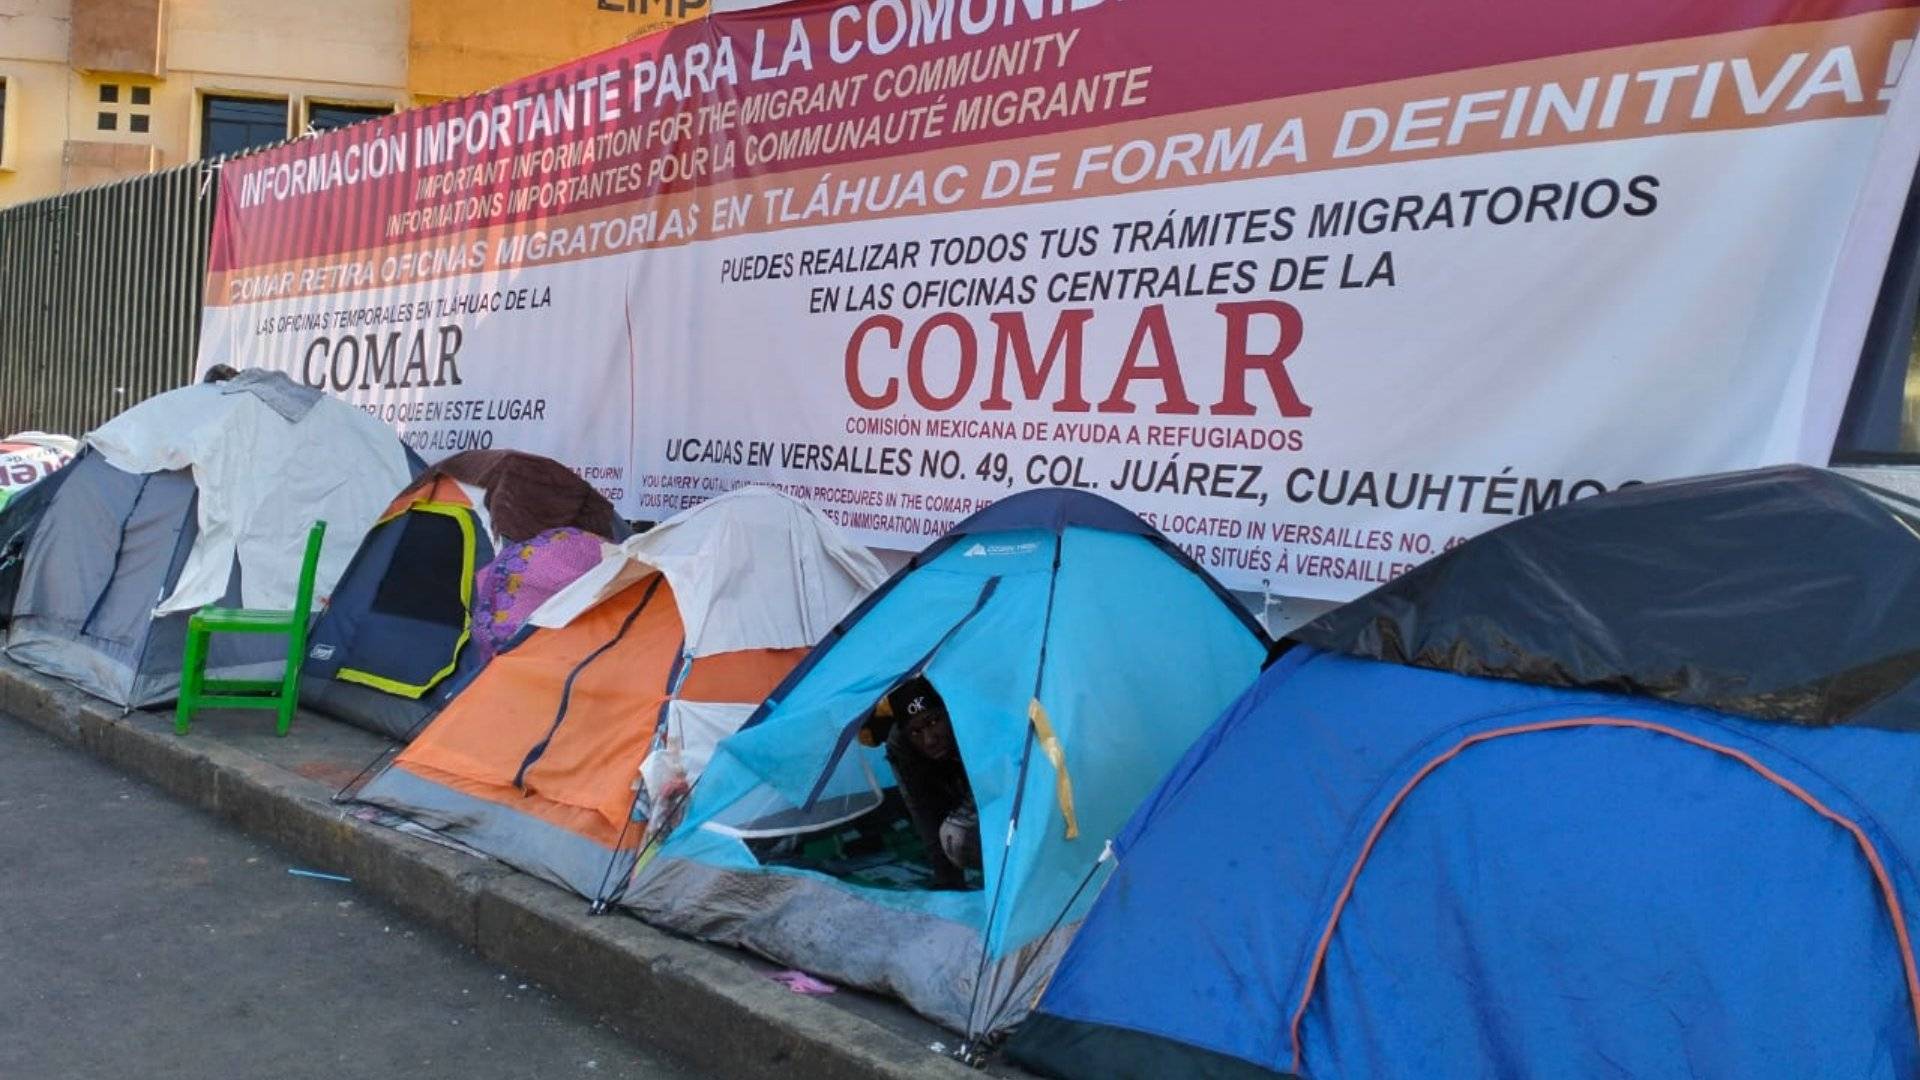 Migrantes derriban barreras de idioma con celulares en Tláhuac